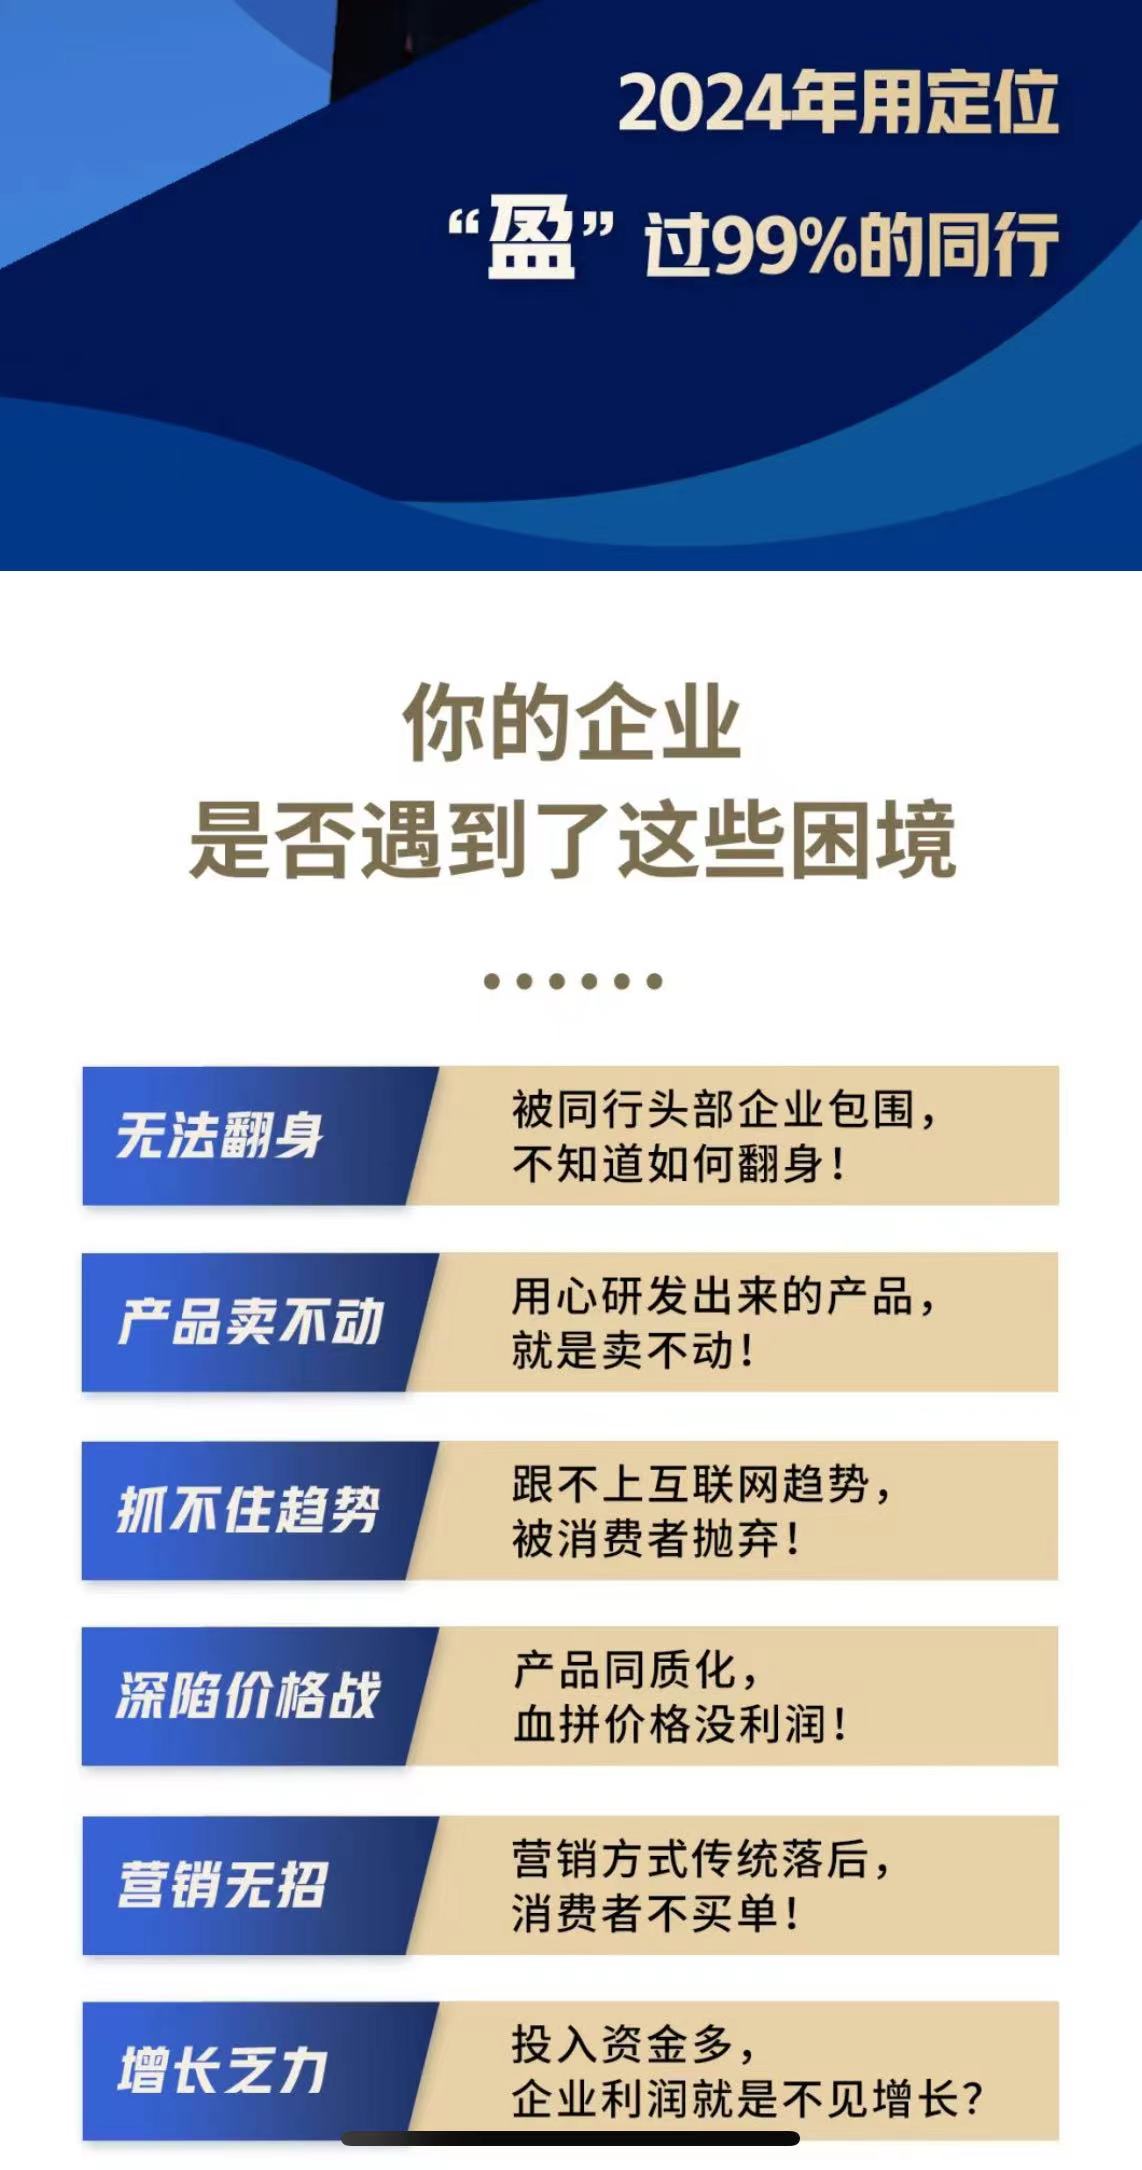 2024年4月20-21日顾均辉课表上海上课：用定位 盈过99%的同行 你的企业 是否遇到了这些困境？